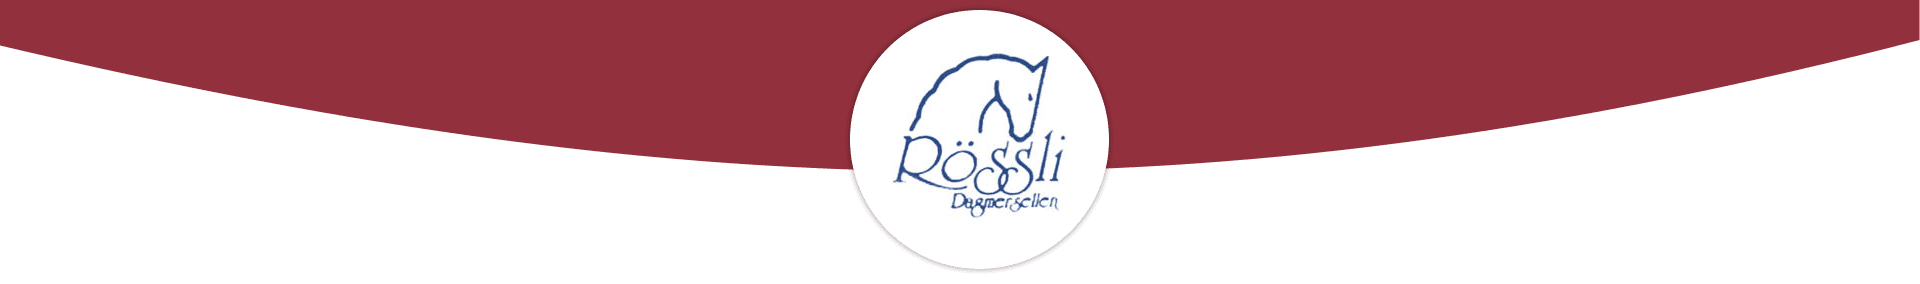 Banner Rössli